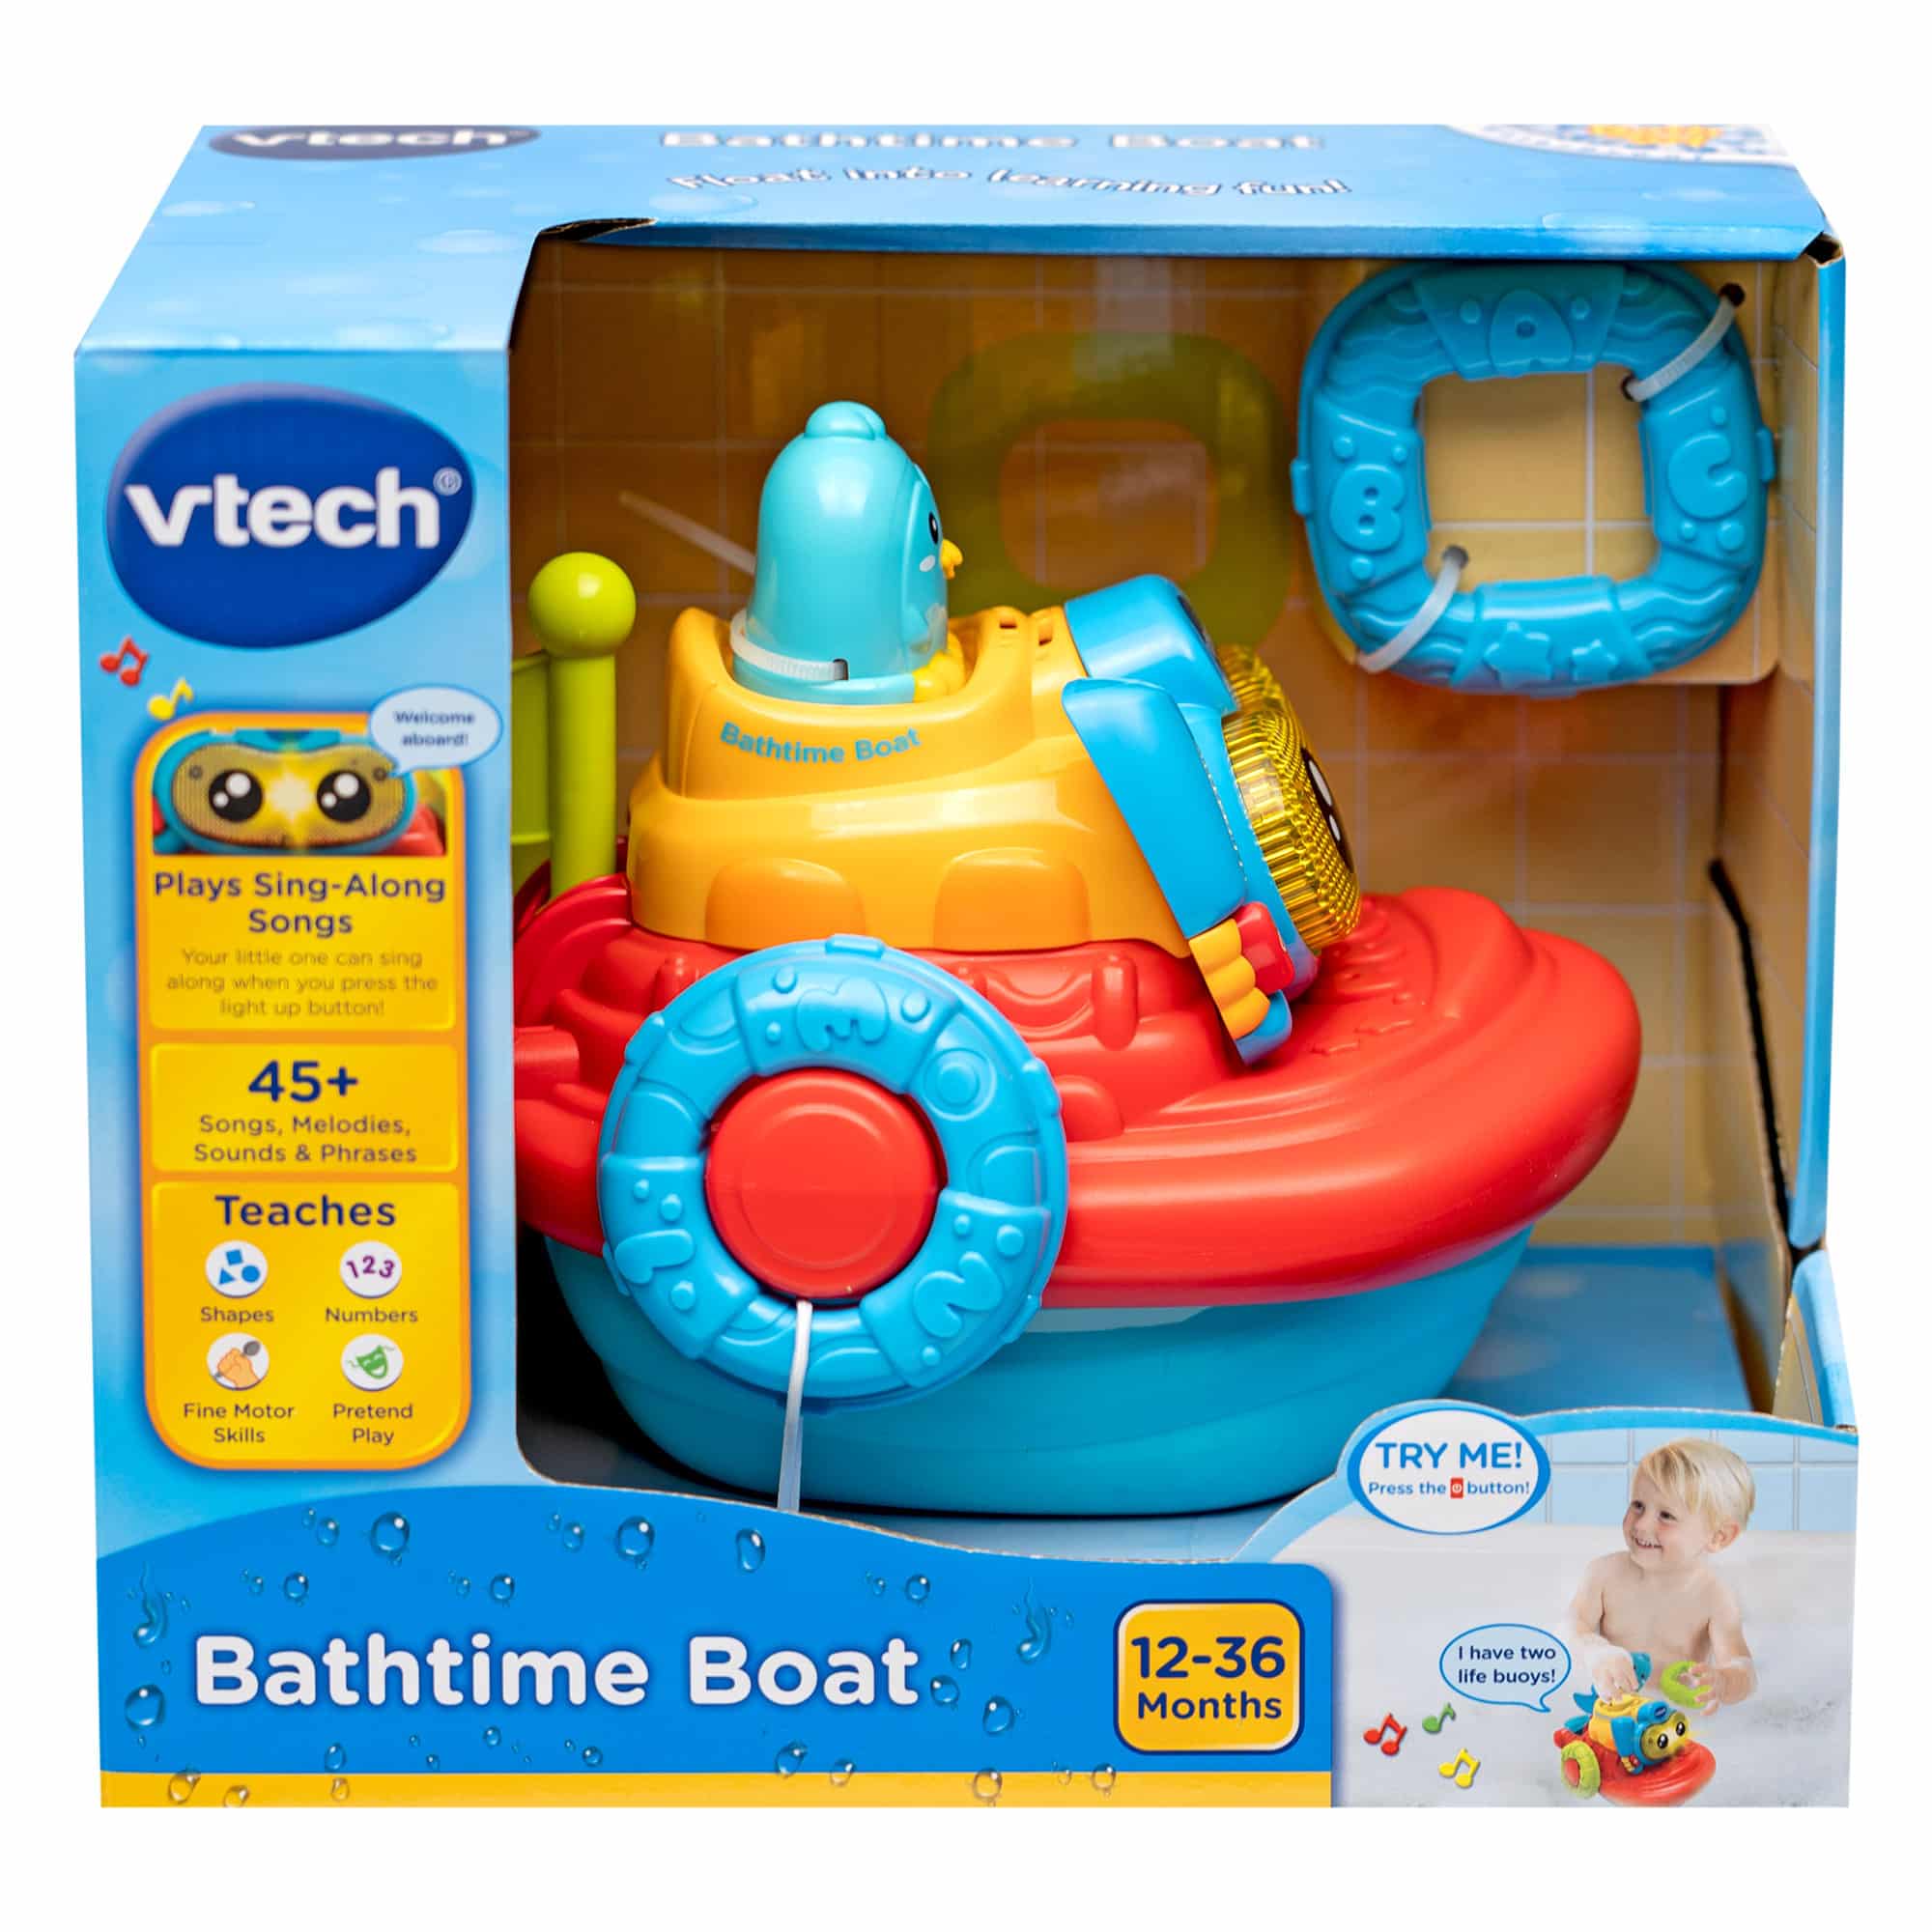 Vtech - Bathtime Boat